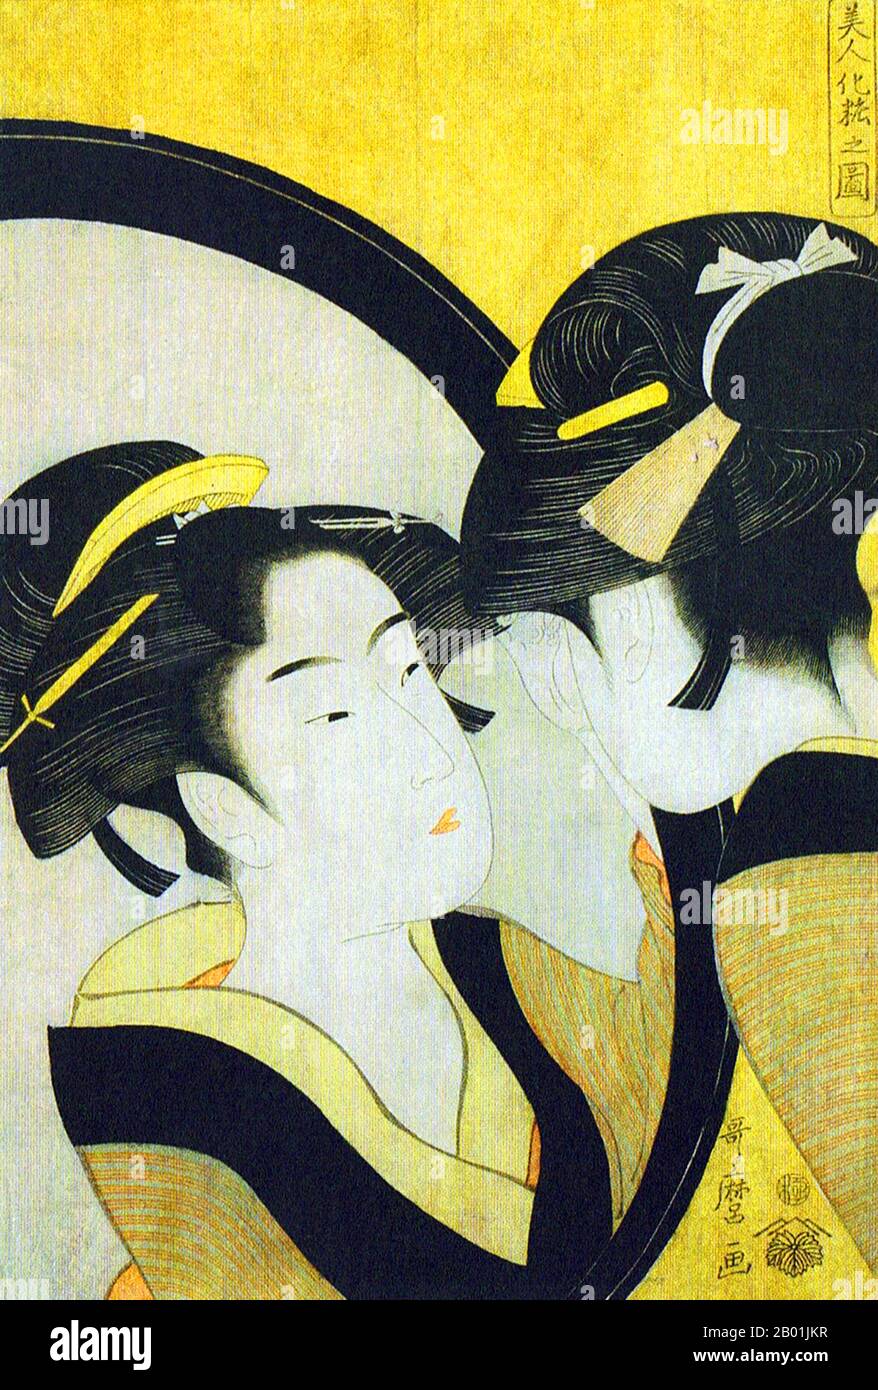 Giappone: "Naniwa Okita si ammira in uno specchio". Ukiyo-e Woodblock print della serie 'Seven Women applying Make-up using a Mirror' di Kitagawa Utamaro (c. 1753 - 31 ottobre 1806), c. 1792-1793. Kitagawa Utamaro era un incisore e pittore giapponese, considerato uno dei più grandi artisti di stampe in legno (ukiyo-e). È noto soprattutto per i suoi studi magistralmente composti sulle donne, noti come bijinga. Ha anche prodotto studi sulla natura, in particolare libri illustrati di insetti. Foto Stock